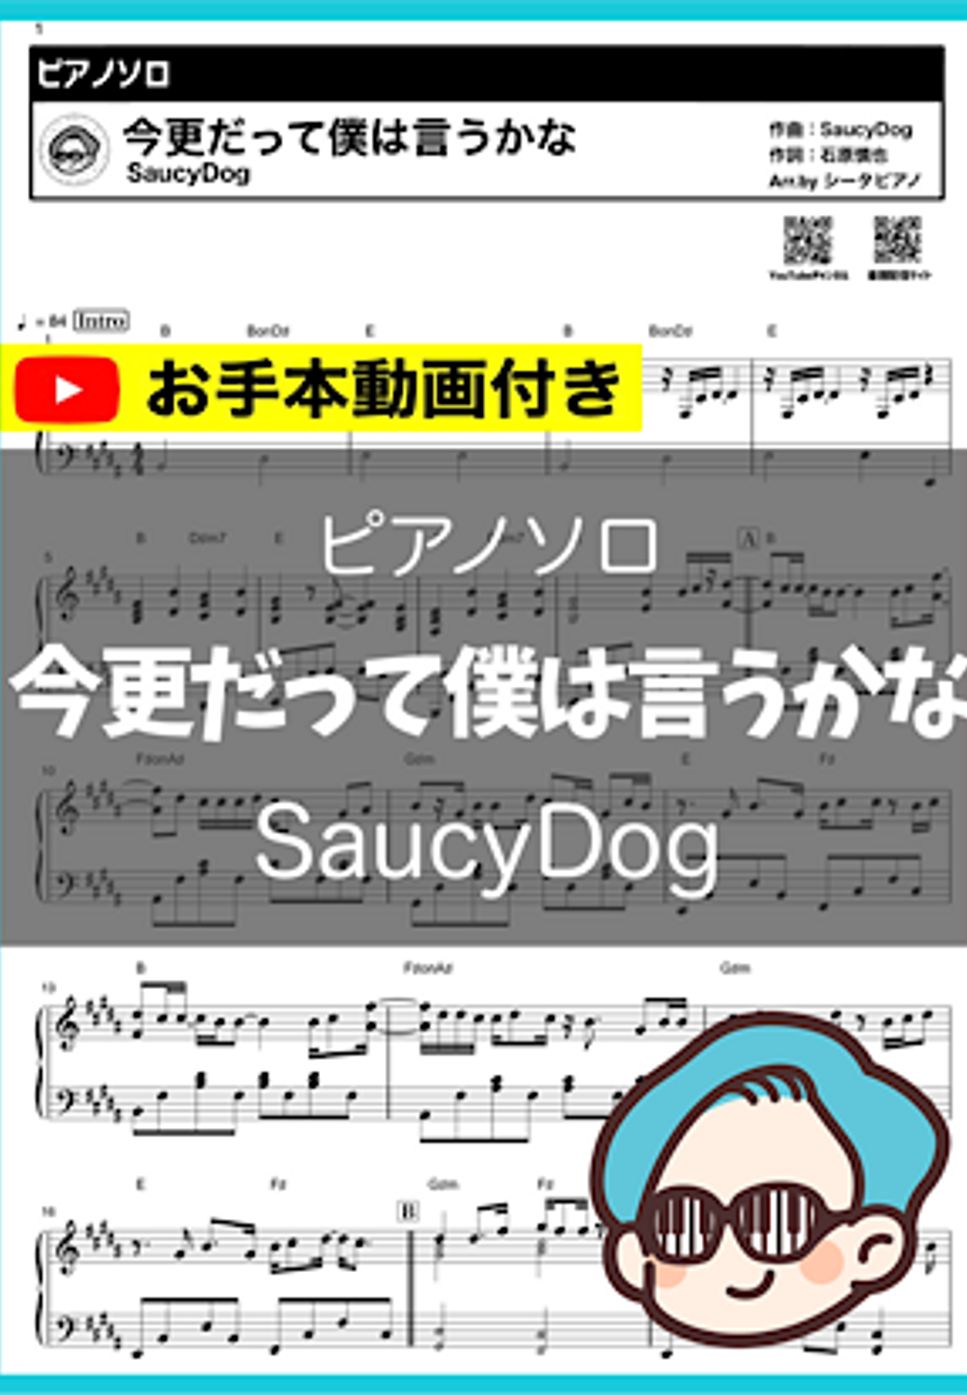 SaucyDog - 今更だって僕は言うかな by シータピアノ